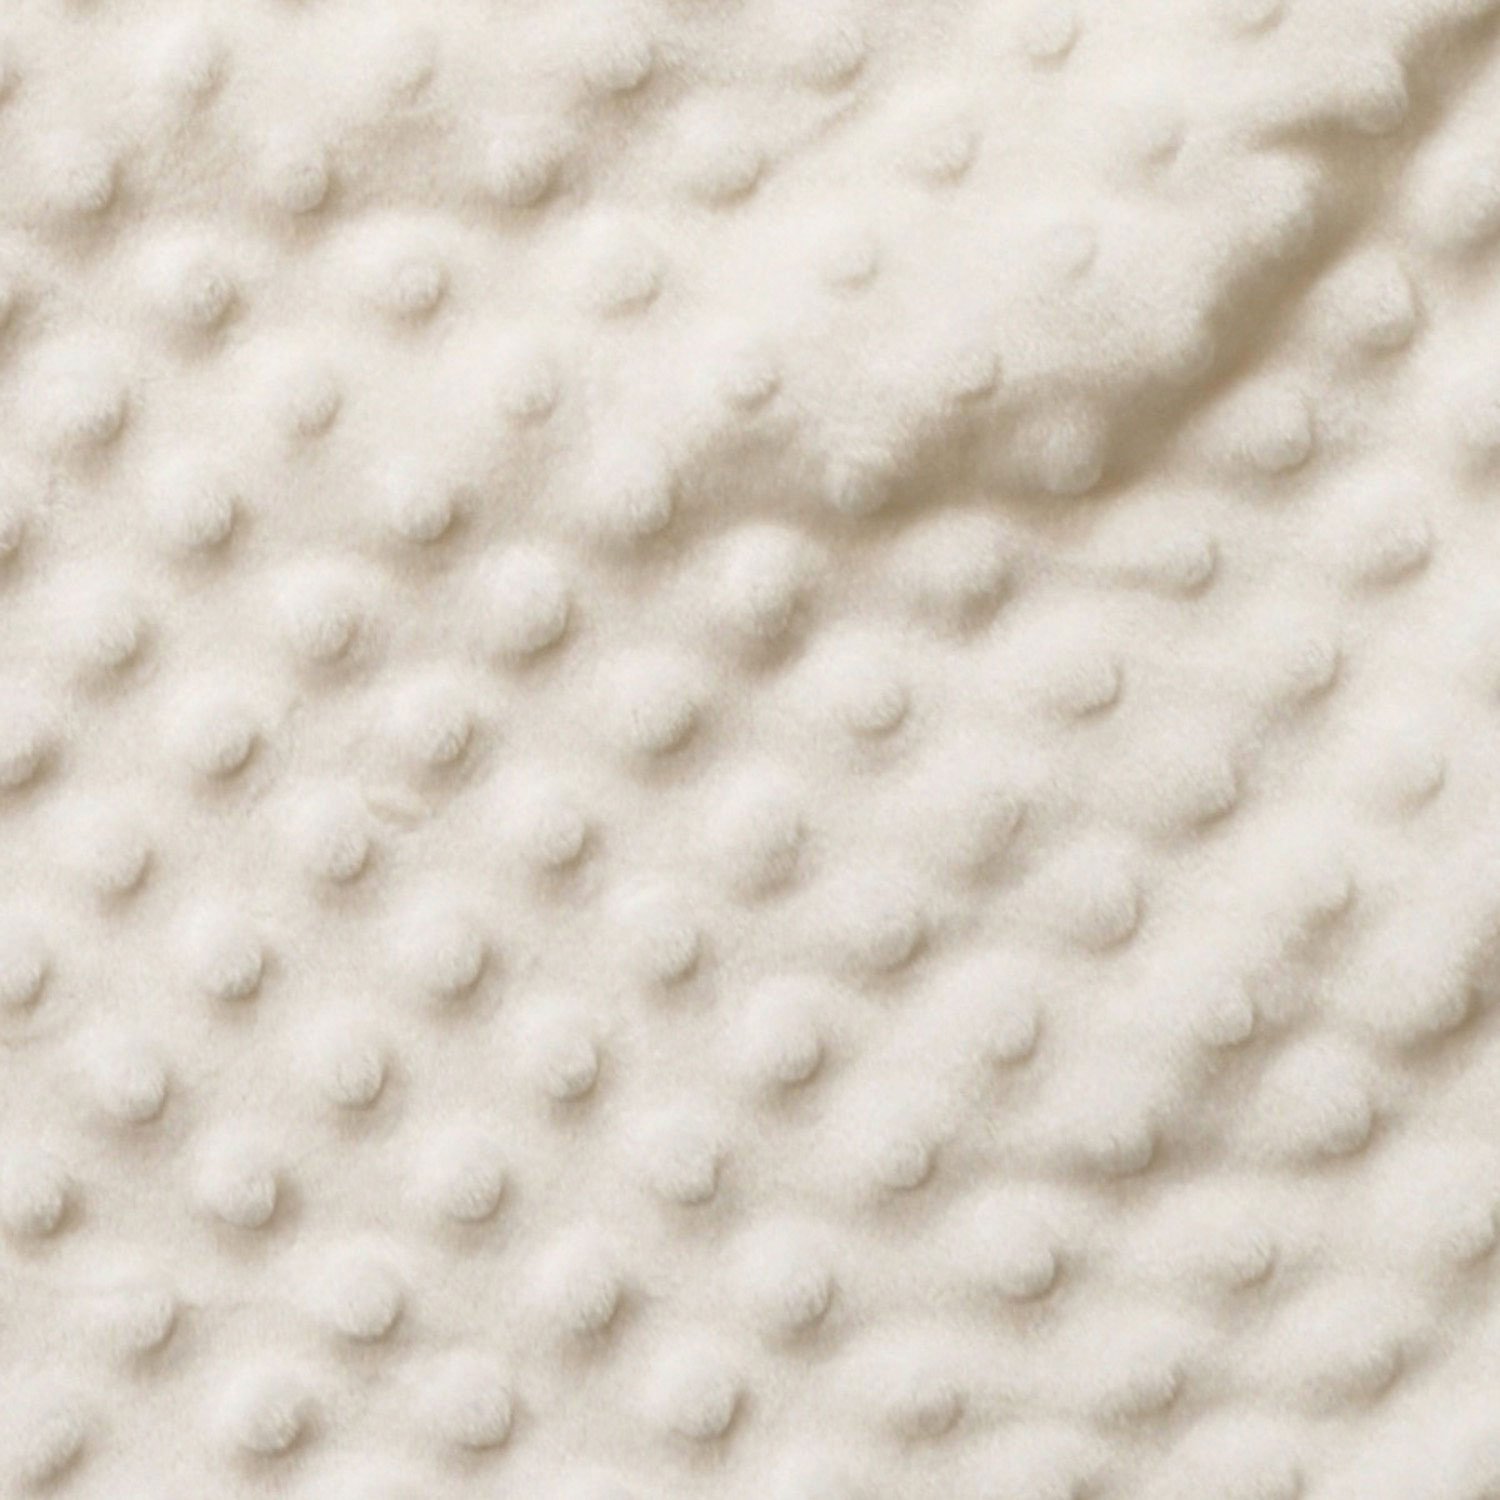 HALO Sleepsack Wearable Blanket, TOG 1.5, Velboa, Cream Plush Dots, Large